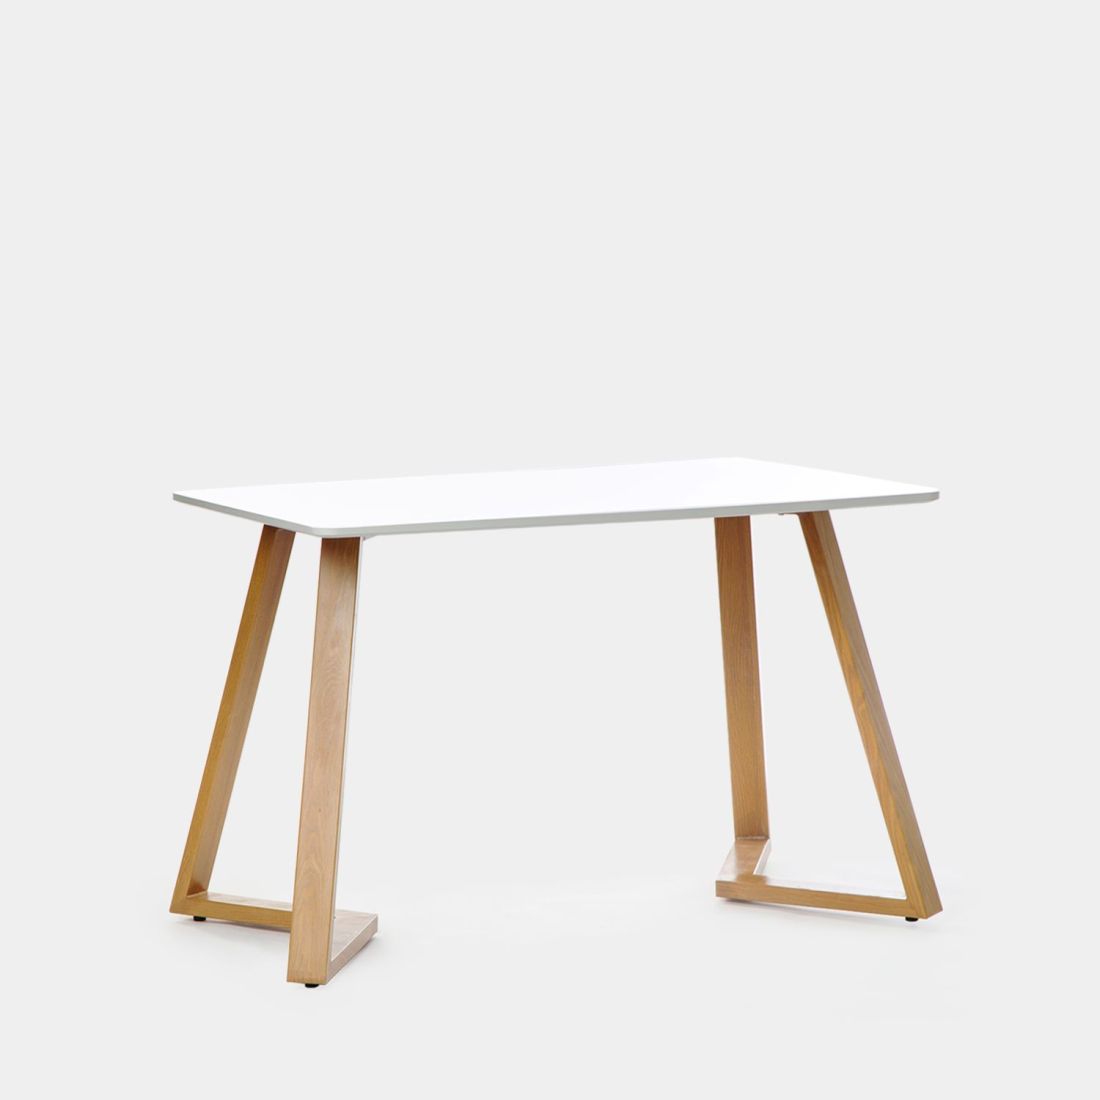 La mesa de comedor ovalada Ilean es de estilo nórdico y minimalista. Se convierte en la elección segura si eres un apasionado del diseño escandinavo y tienes un espacio reducido. Con sobre blanco y patas en acabado natural